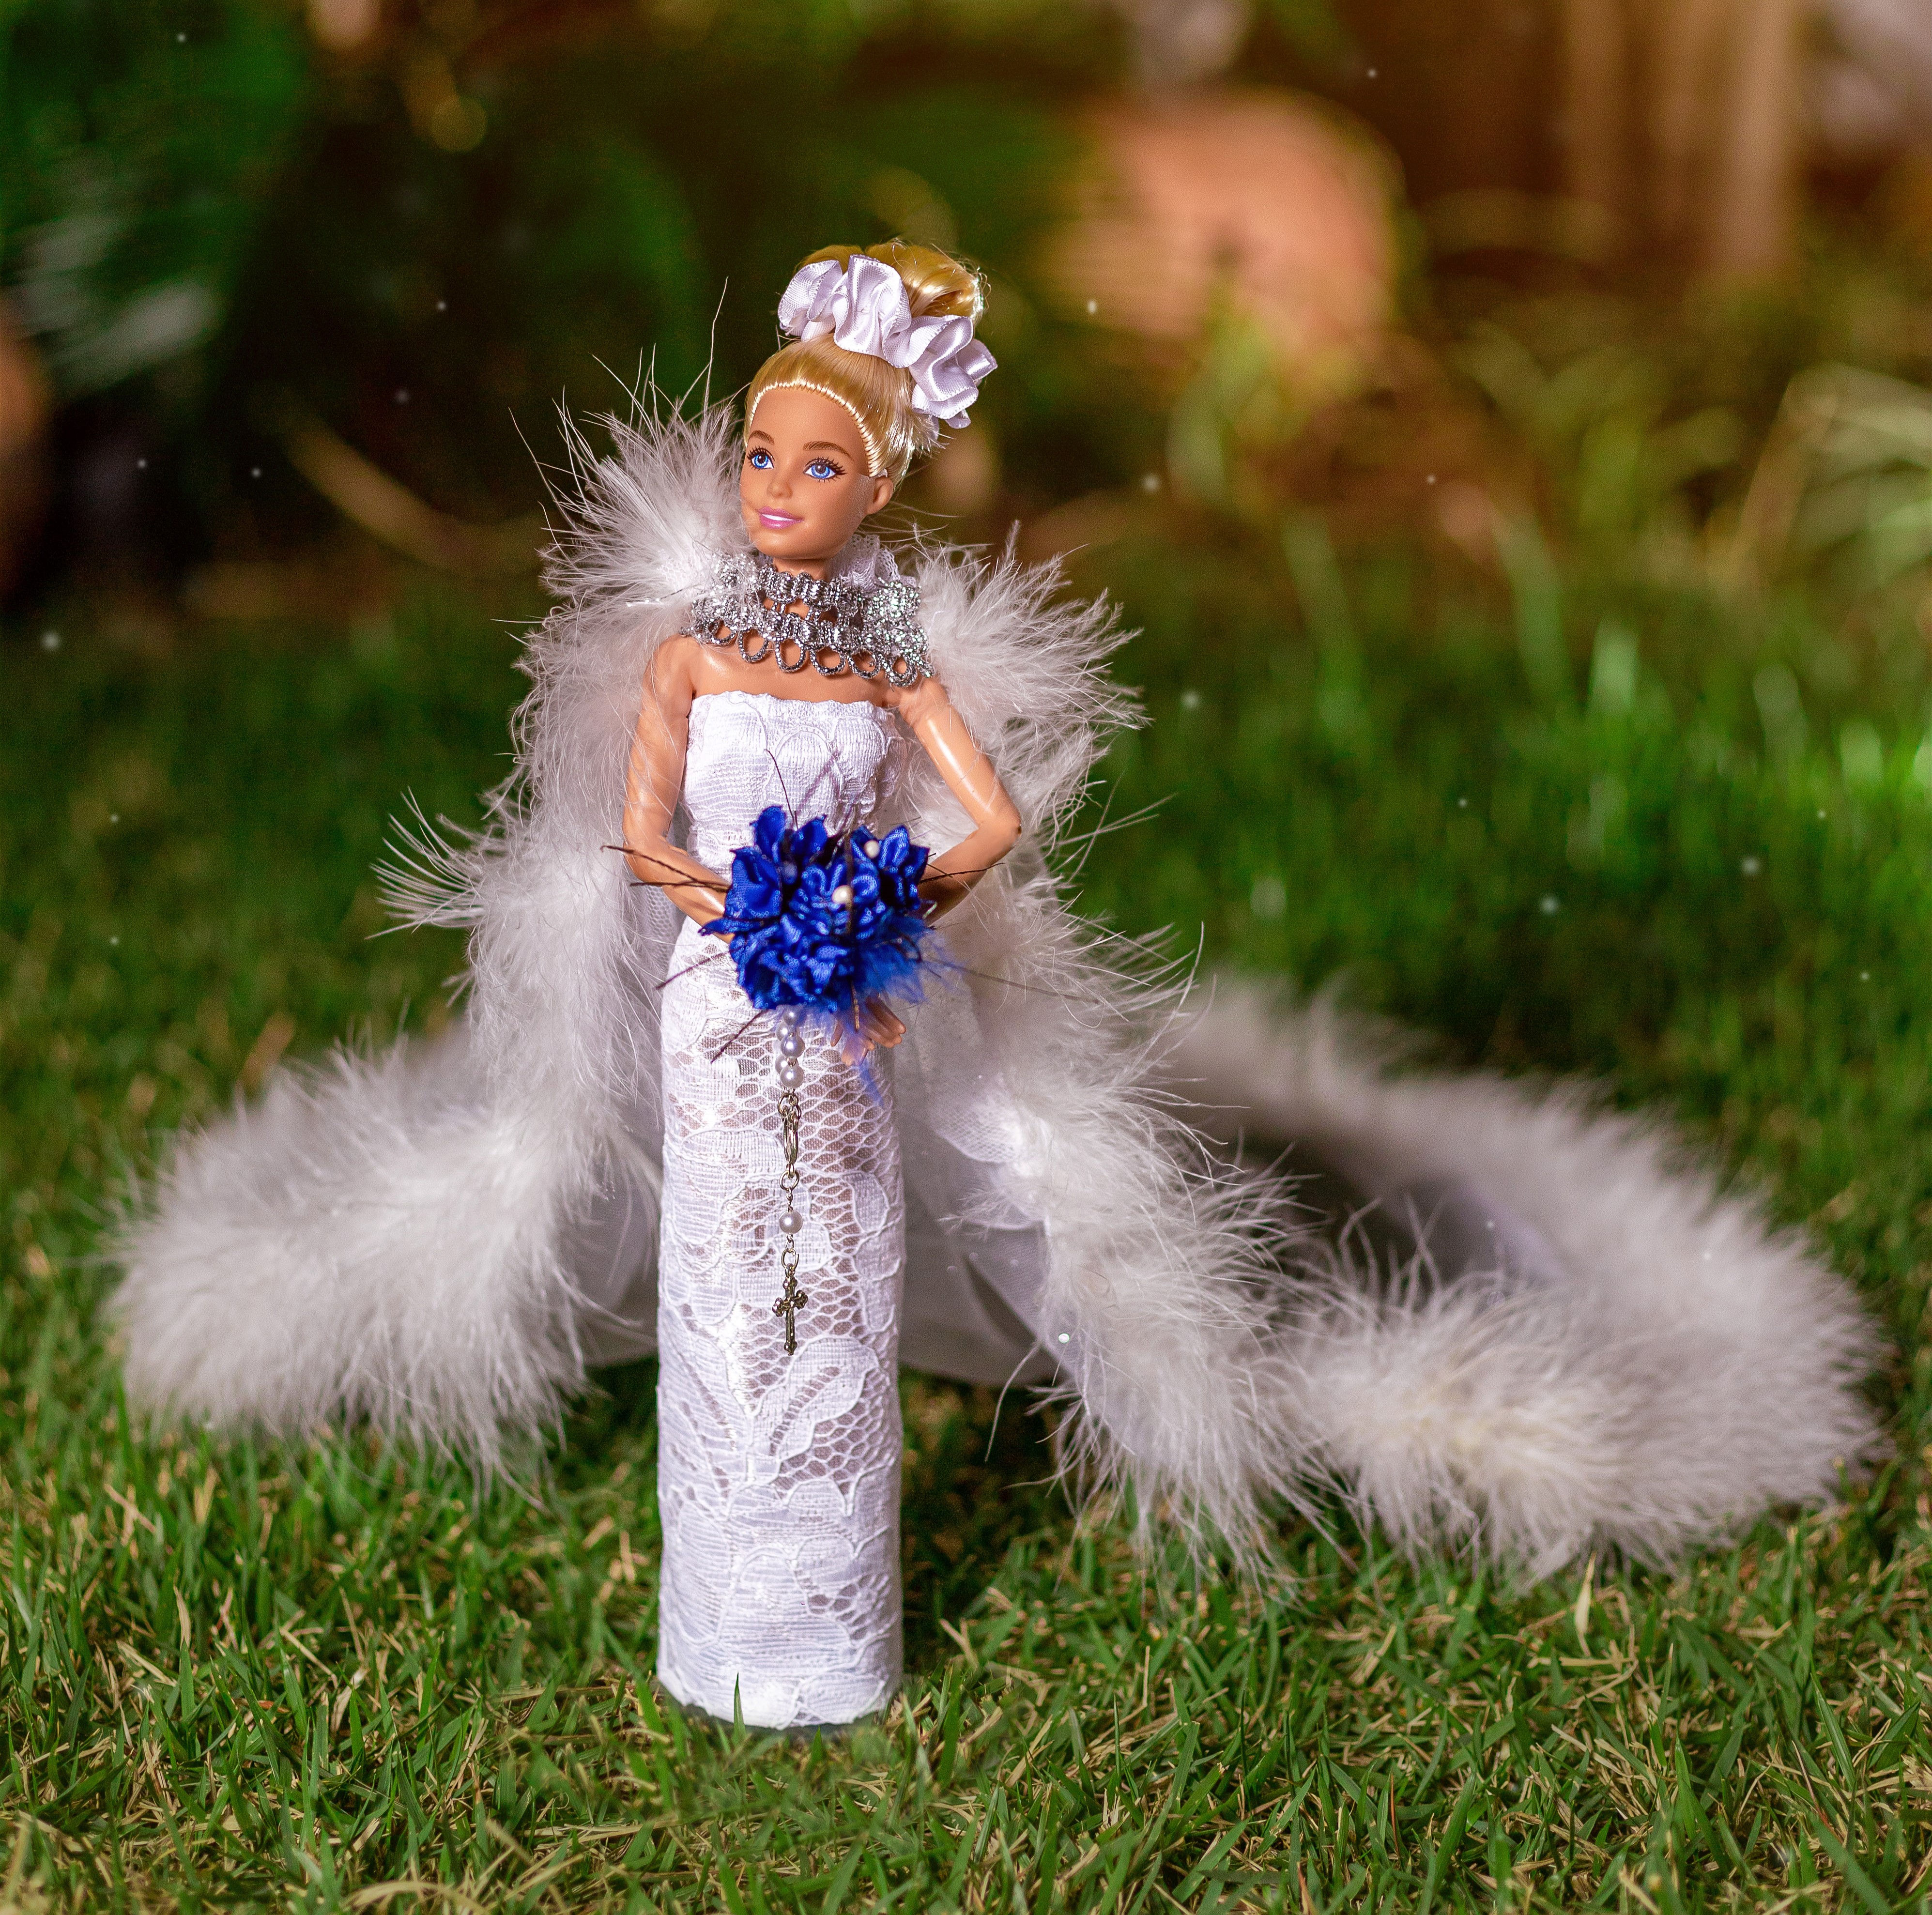 Passo a Passo em Português do Vestido de Noiva de Crochê Para Barbie